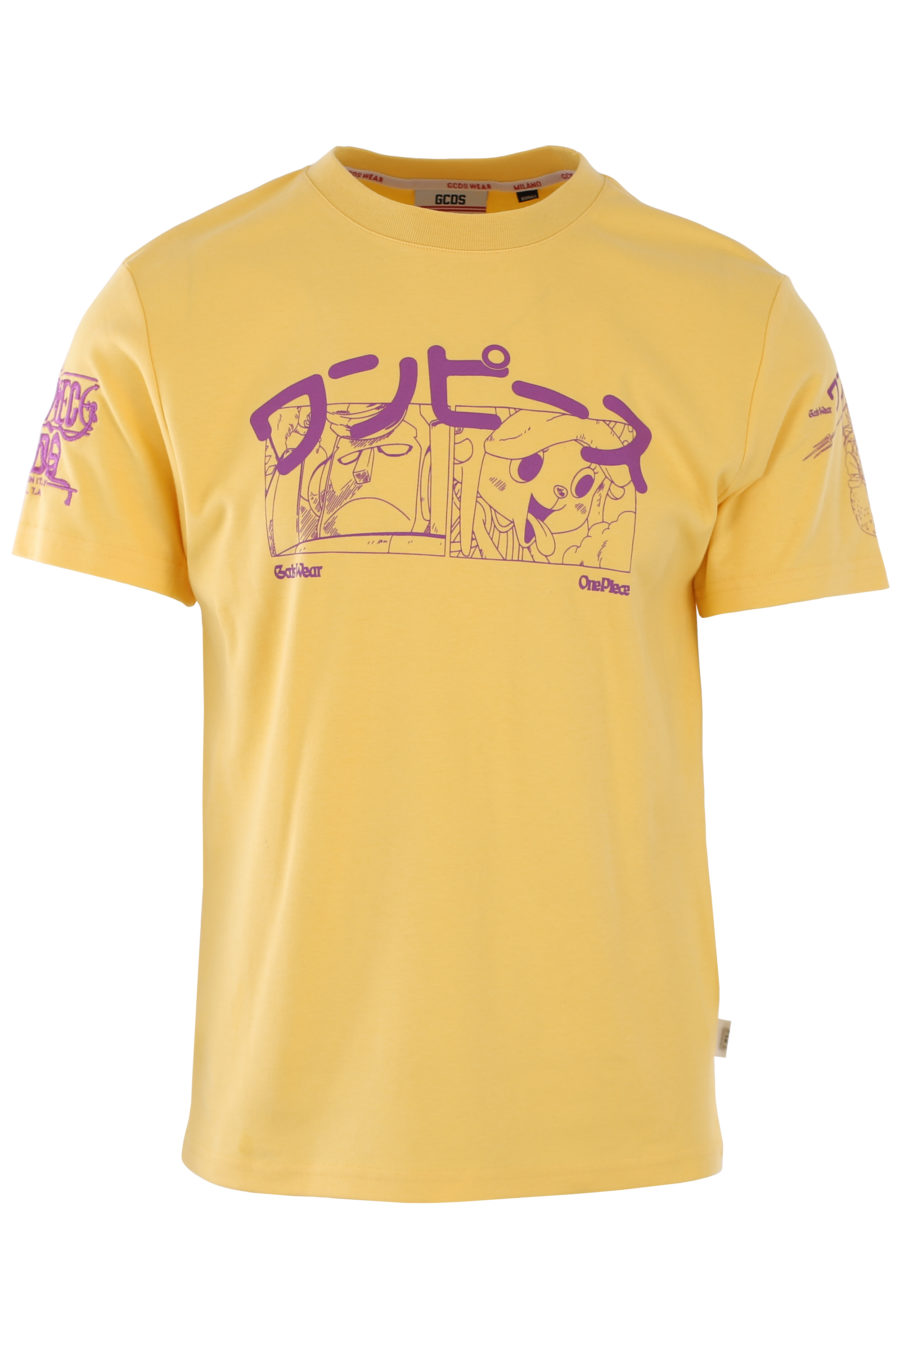 T-shirt jaune avec imprimé anime violet - IMG 1127